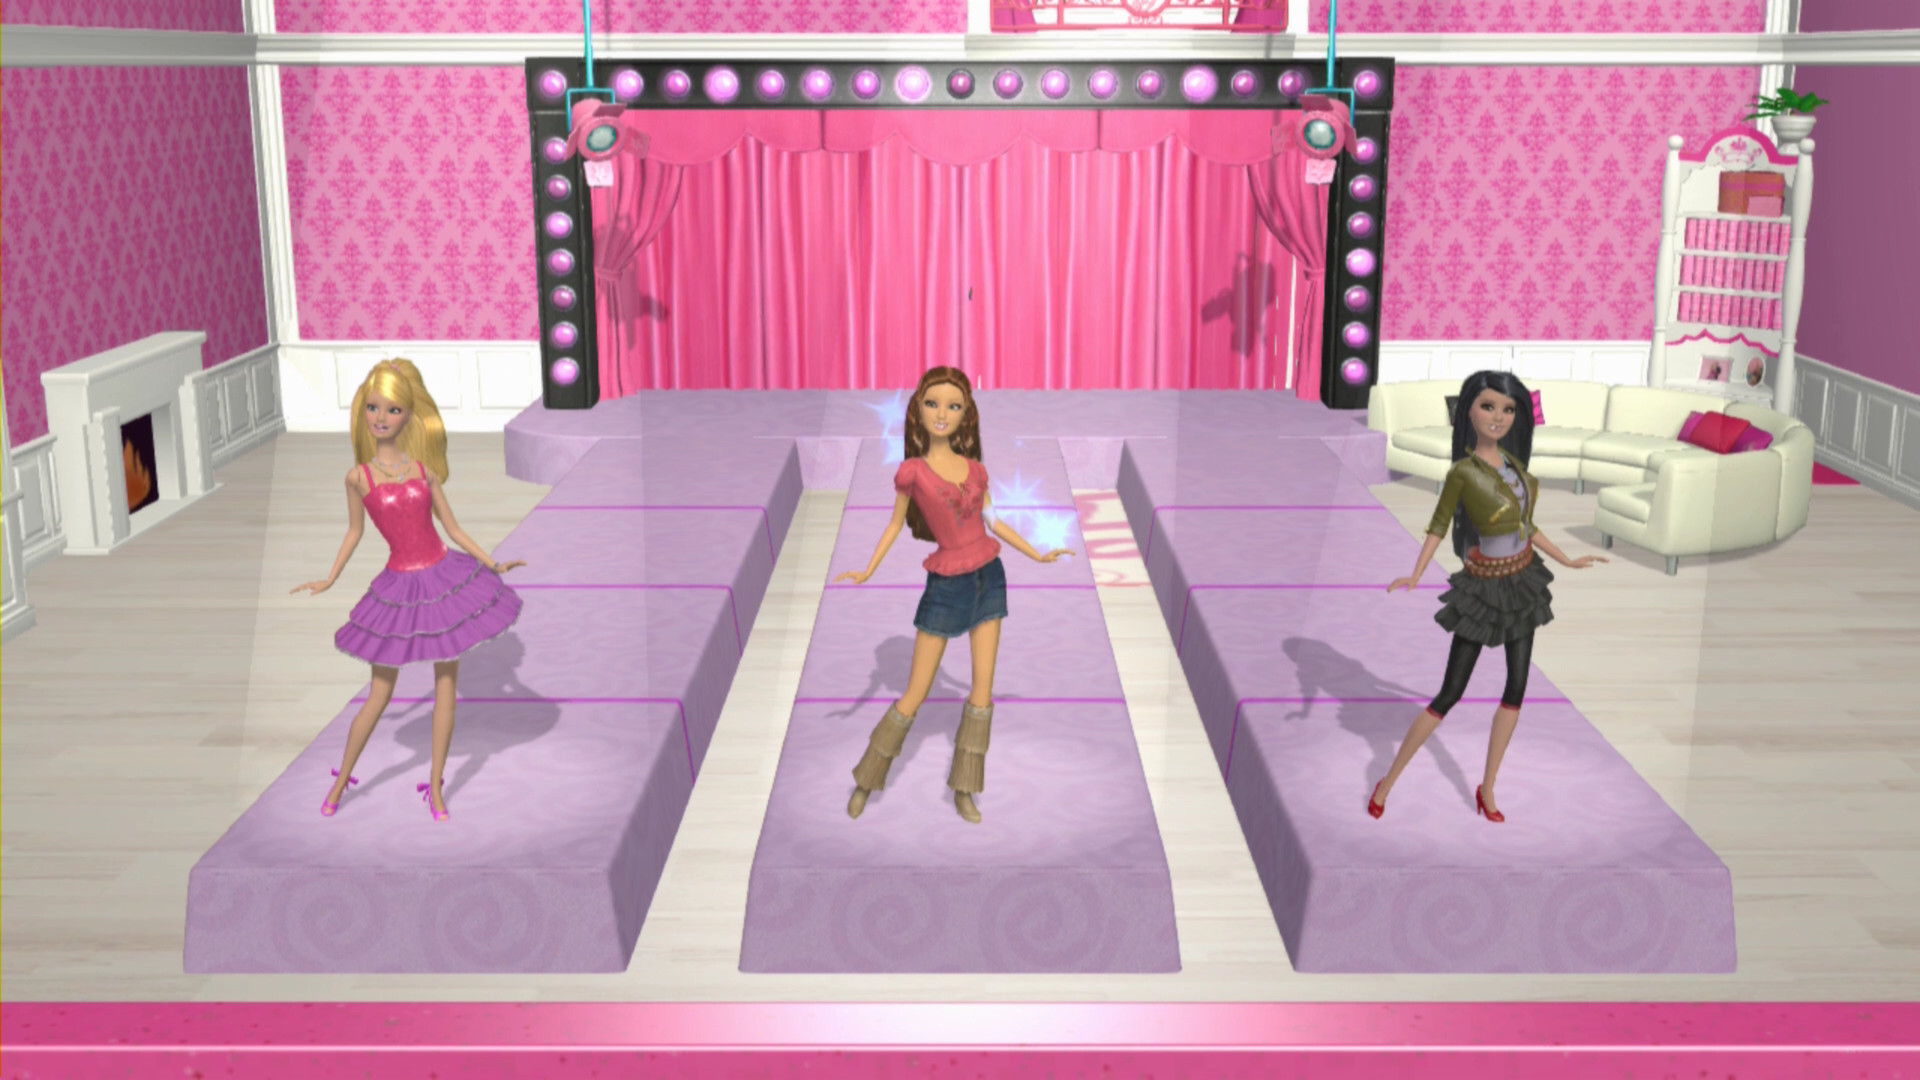 Нова игра барби. Barbie Dream House игра. Барби Дрим Хаус парти. Игры Барби дом мечты пати. Барби: жизнь в доме мечты (2012).